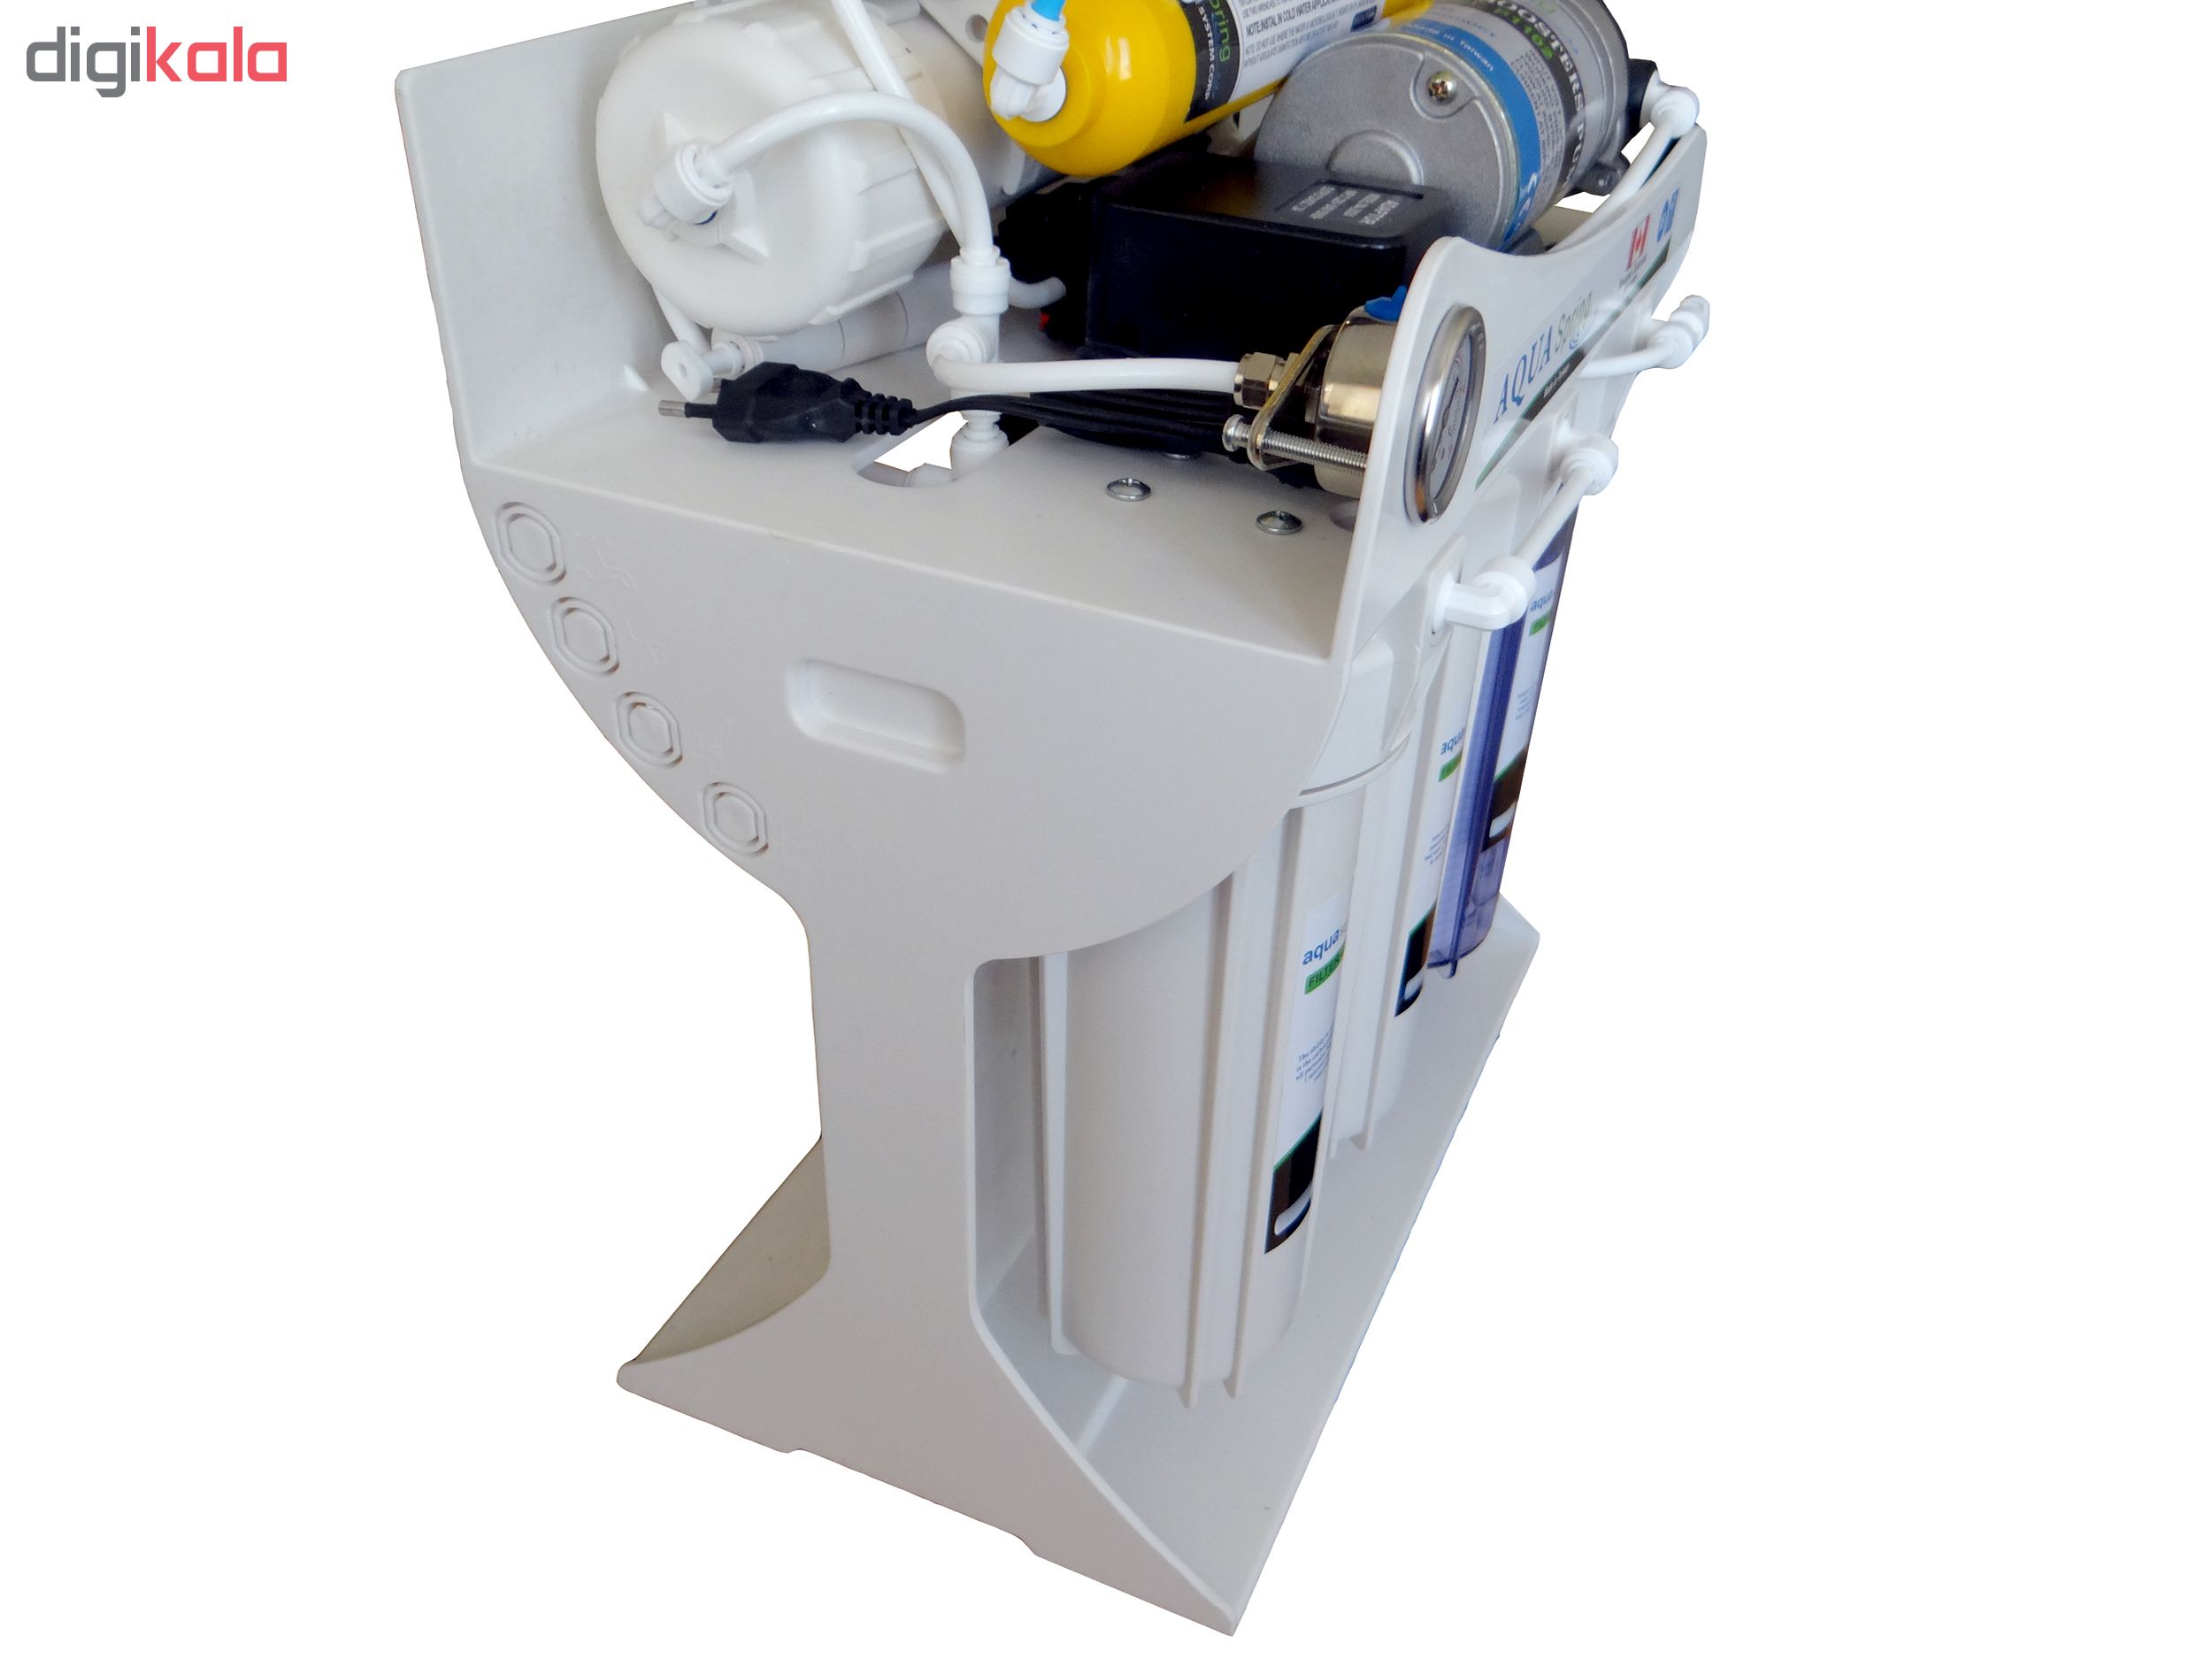 دستگاه دو گانه تصفیه کننده آب آکوآ اسپرینگ مدل UF-SF4000 به همراه فیلتر دستگاه تصفیه کننده آب بسته 4 عددی